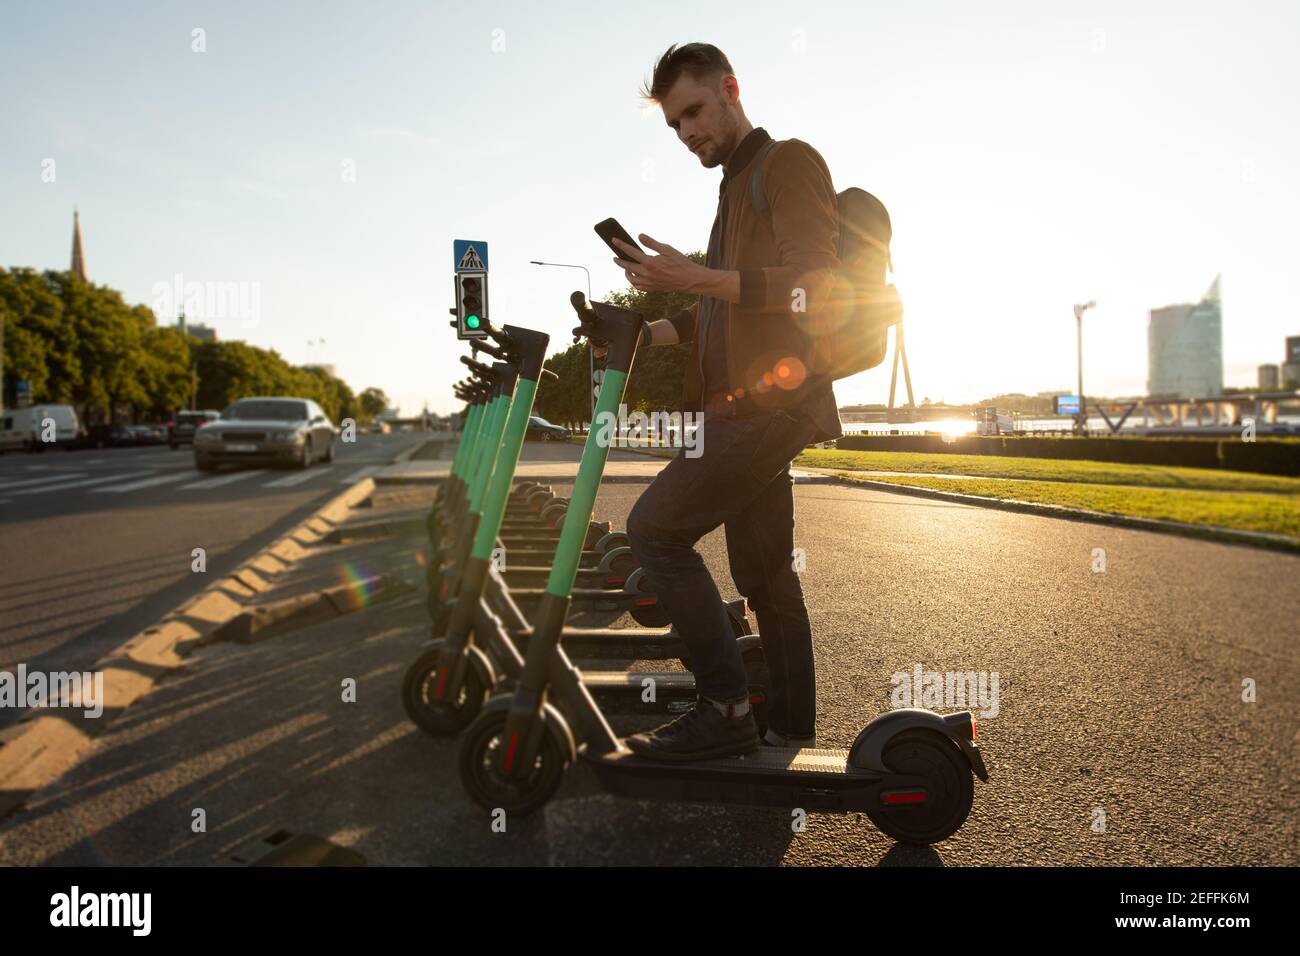 Trasporti ecologici e sostenibilità nelle città. Persona che utilizza scooter elettrico nuovo modo di mobilità della città. Obiettivi neutrali per il clima del trasporto verde Foto Stock